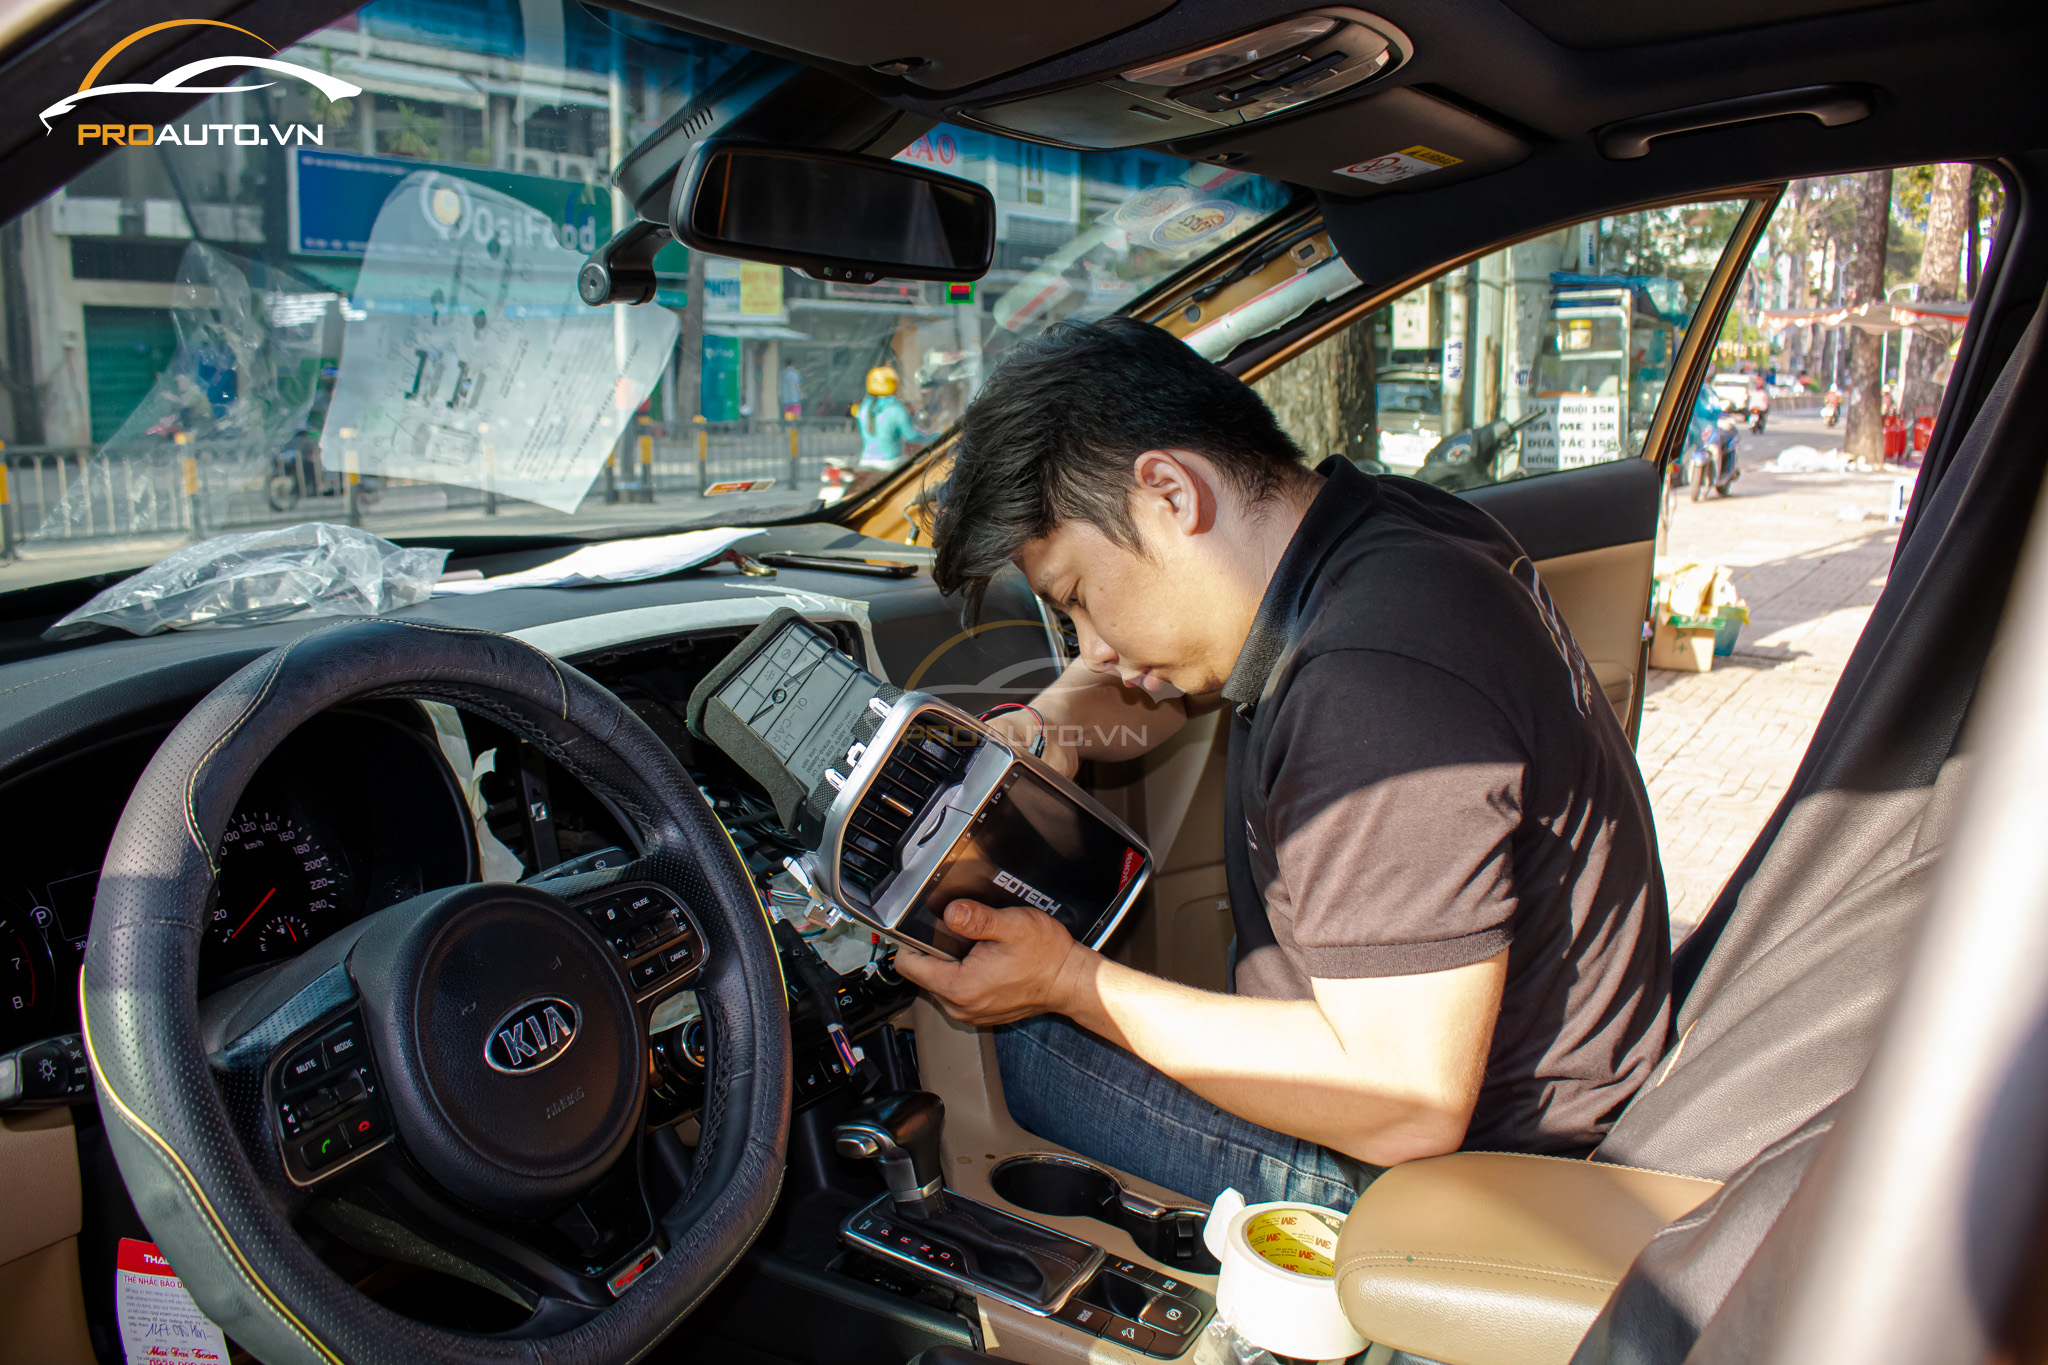 Thi công lắp màn hình Android Gotech cho ô tô tại ProAuto.vn